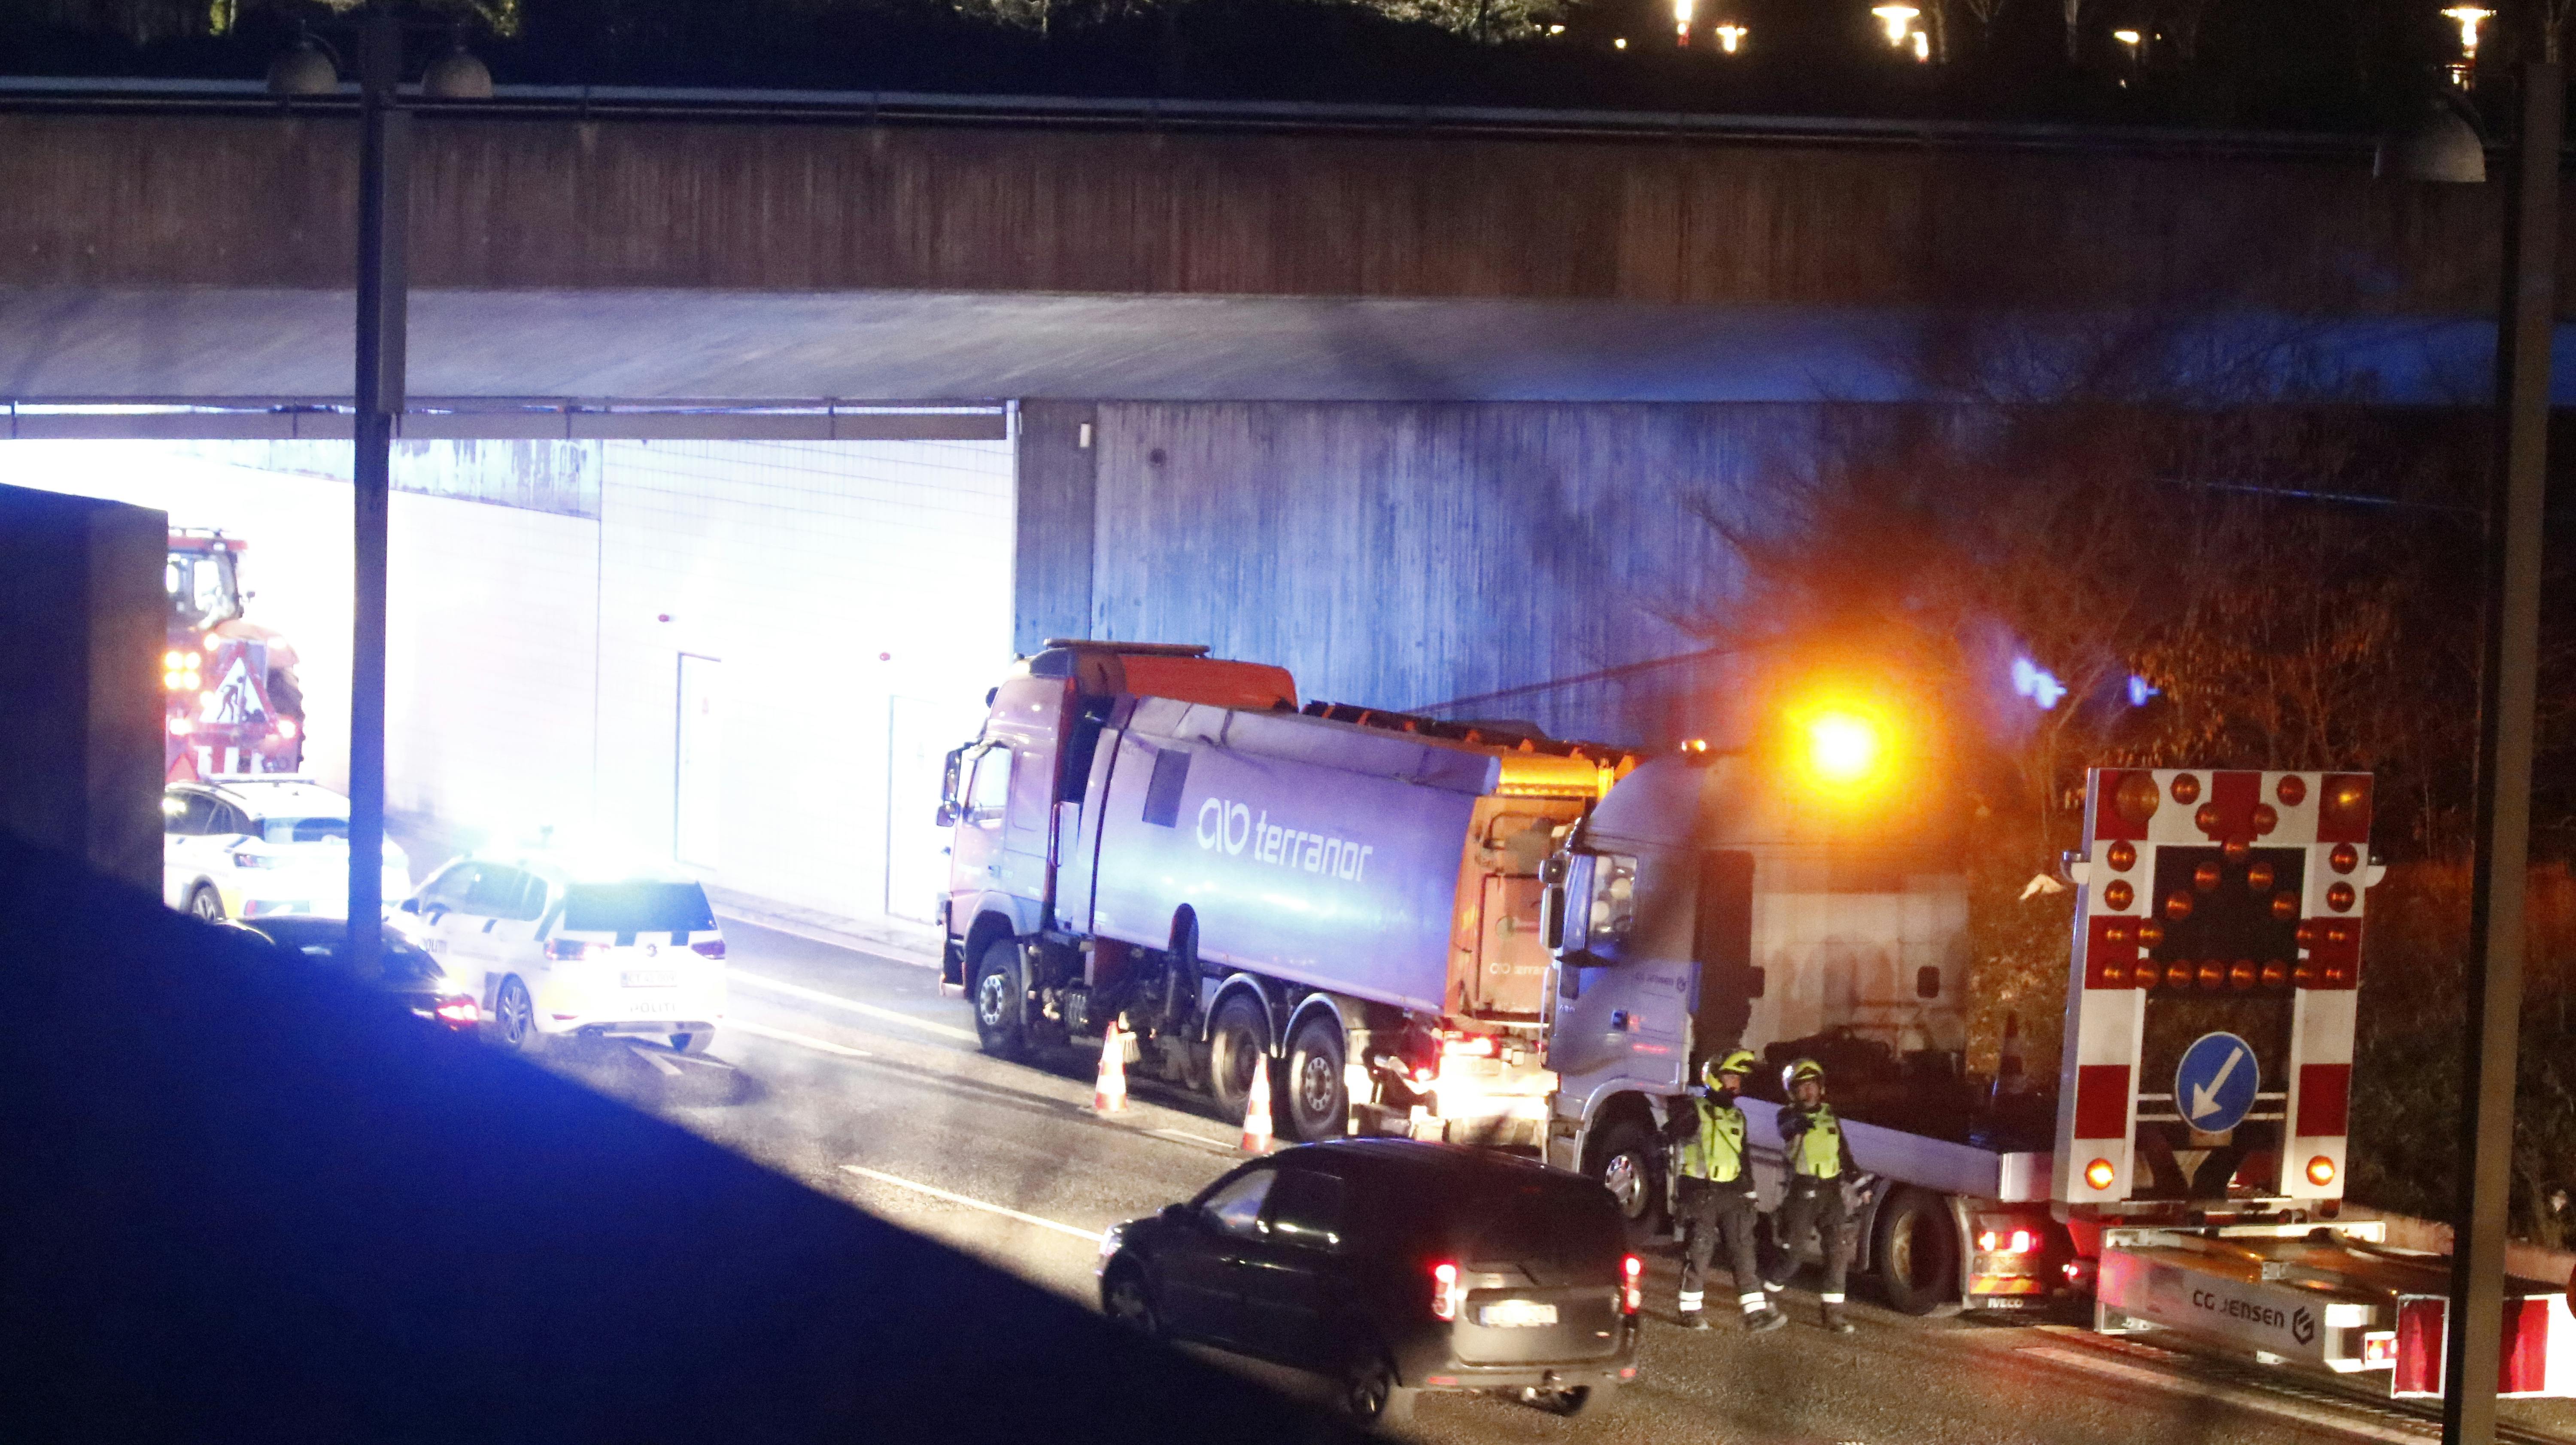 Der er sket et alvorligt trafikuheld på Øresundsmotorvejen onsdag aften. En mand har mistet livet. 